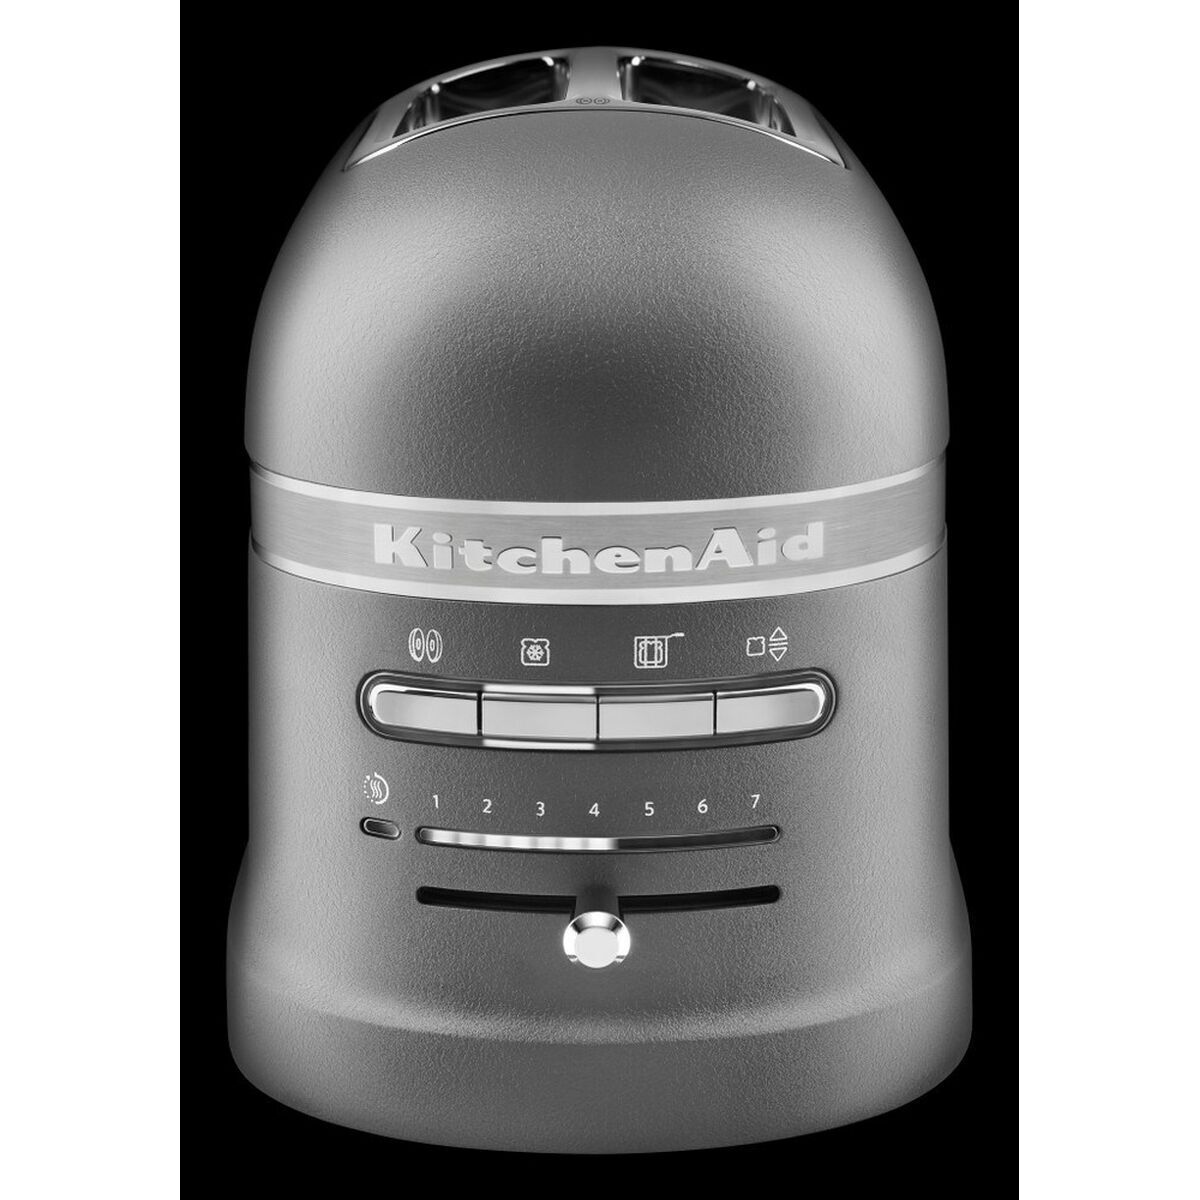 Kitchenaid Toaster KitchenAid 5KMT2204EGR 1250 W